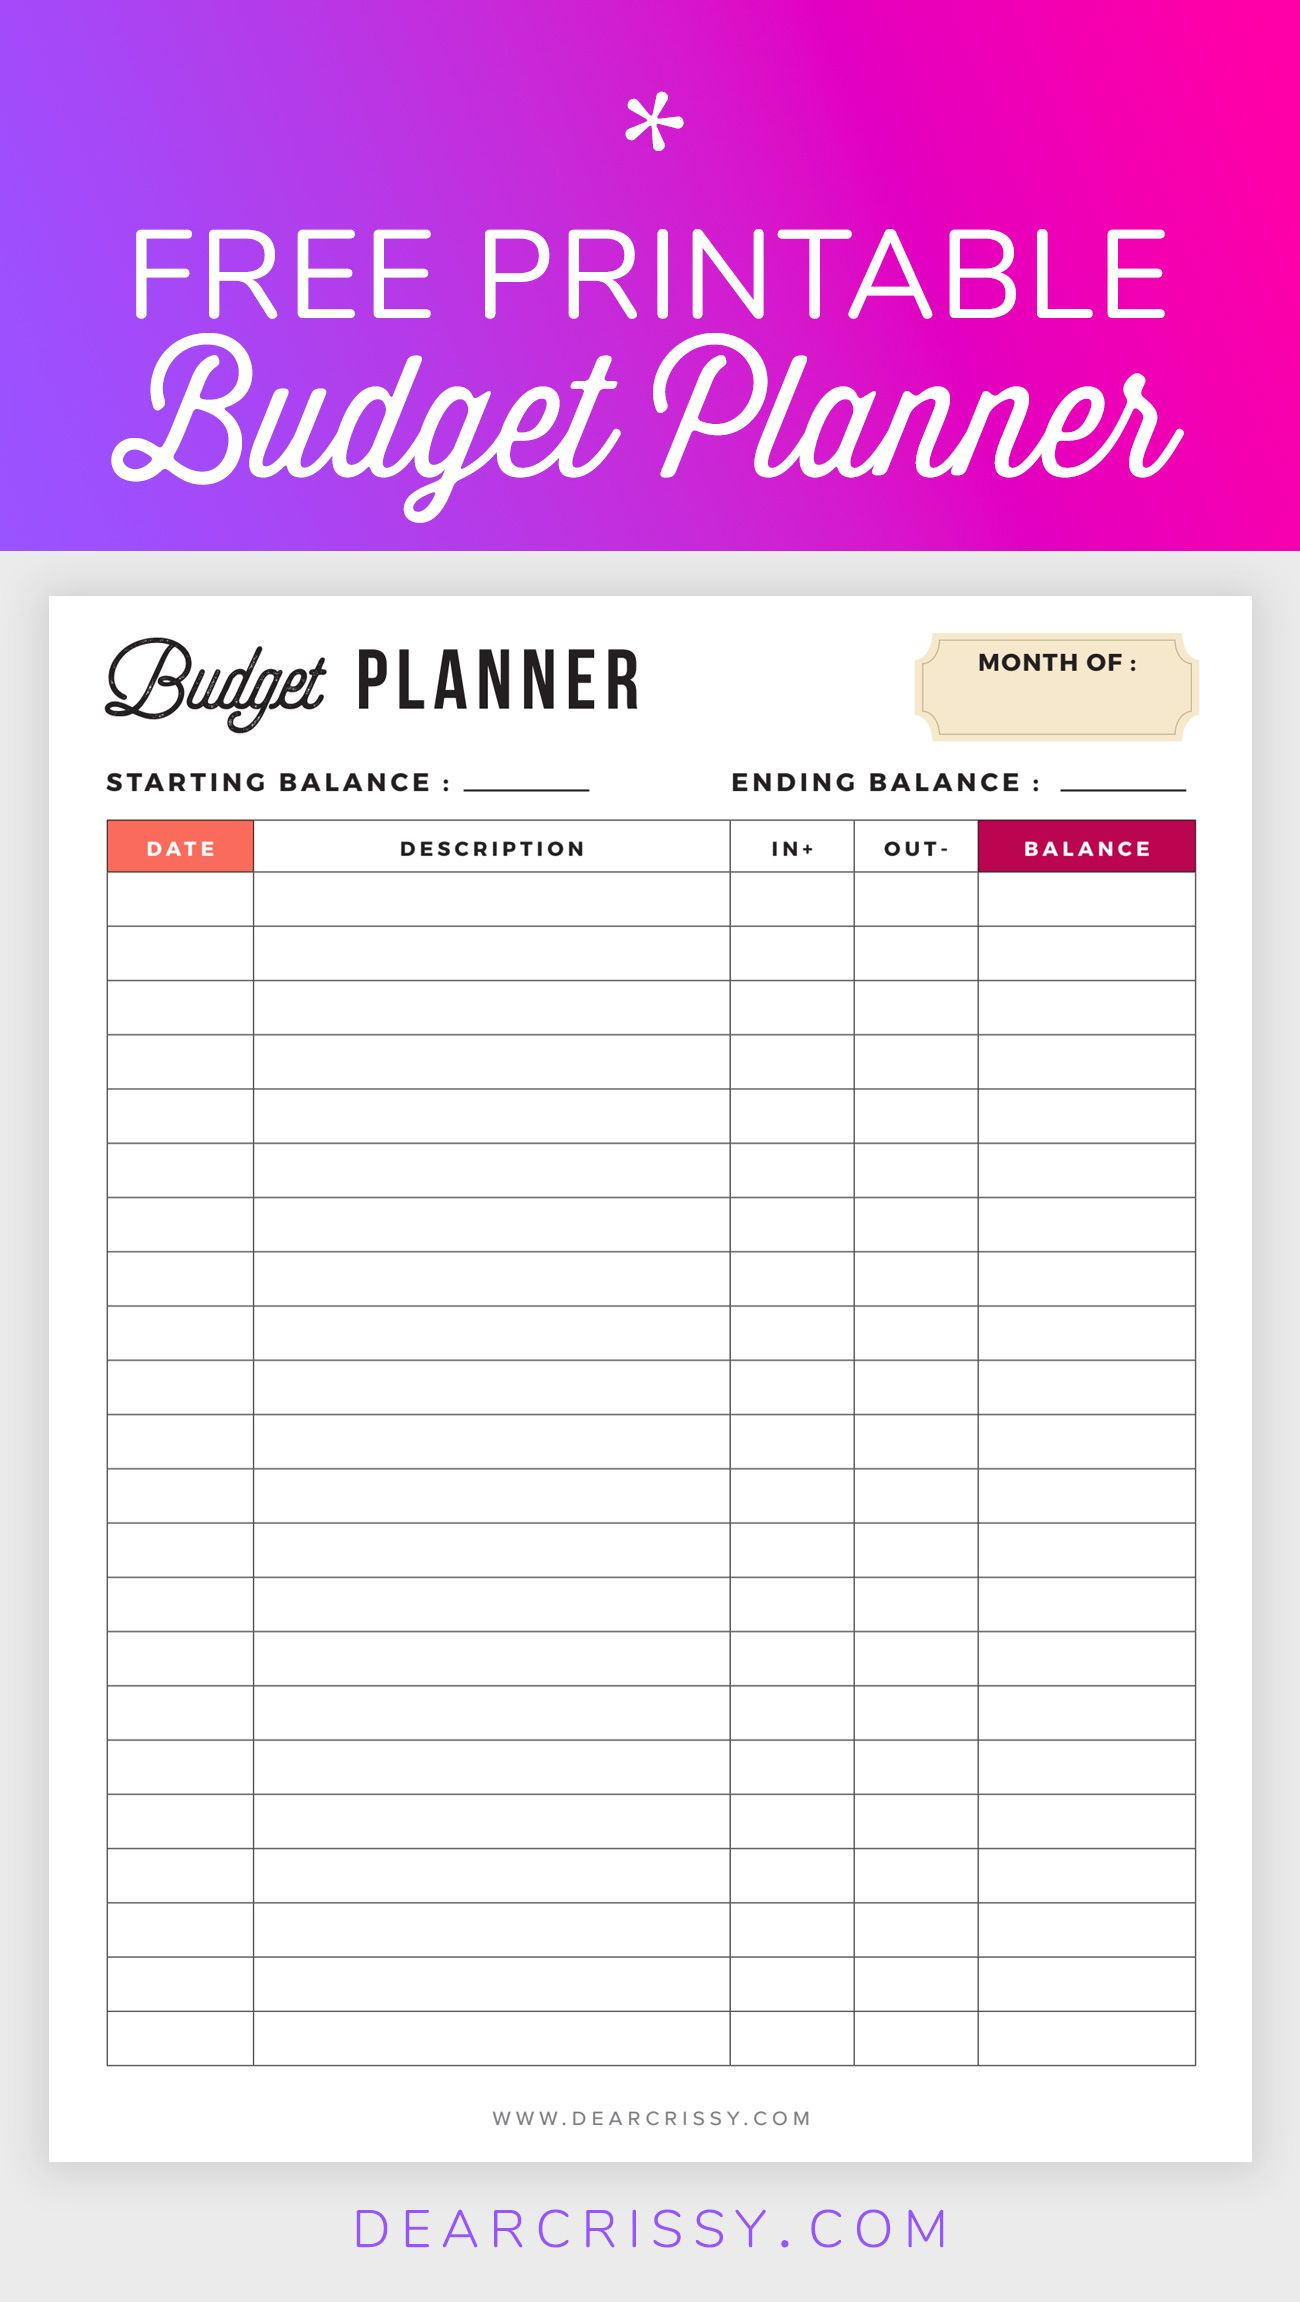 Free Budget Planner Printable - Printable Finance Planner | Home - Free Printable Budget Planner